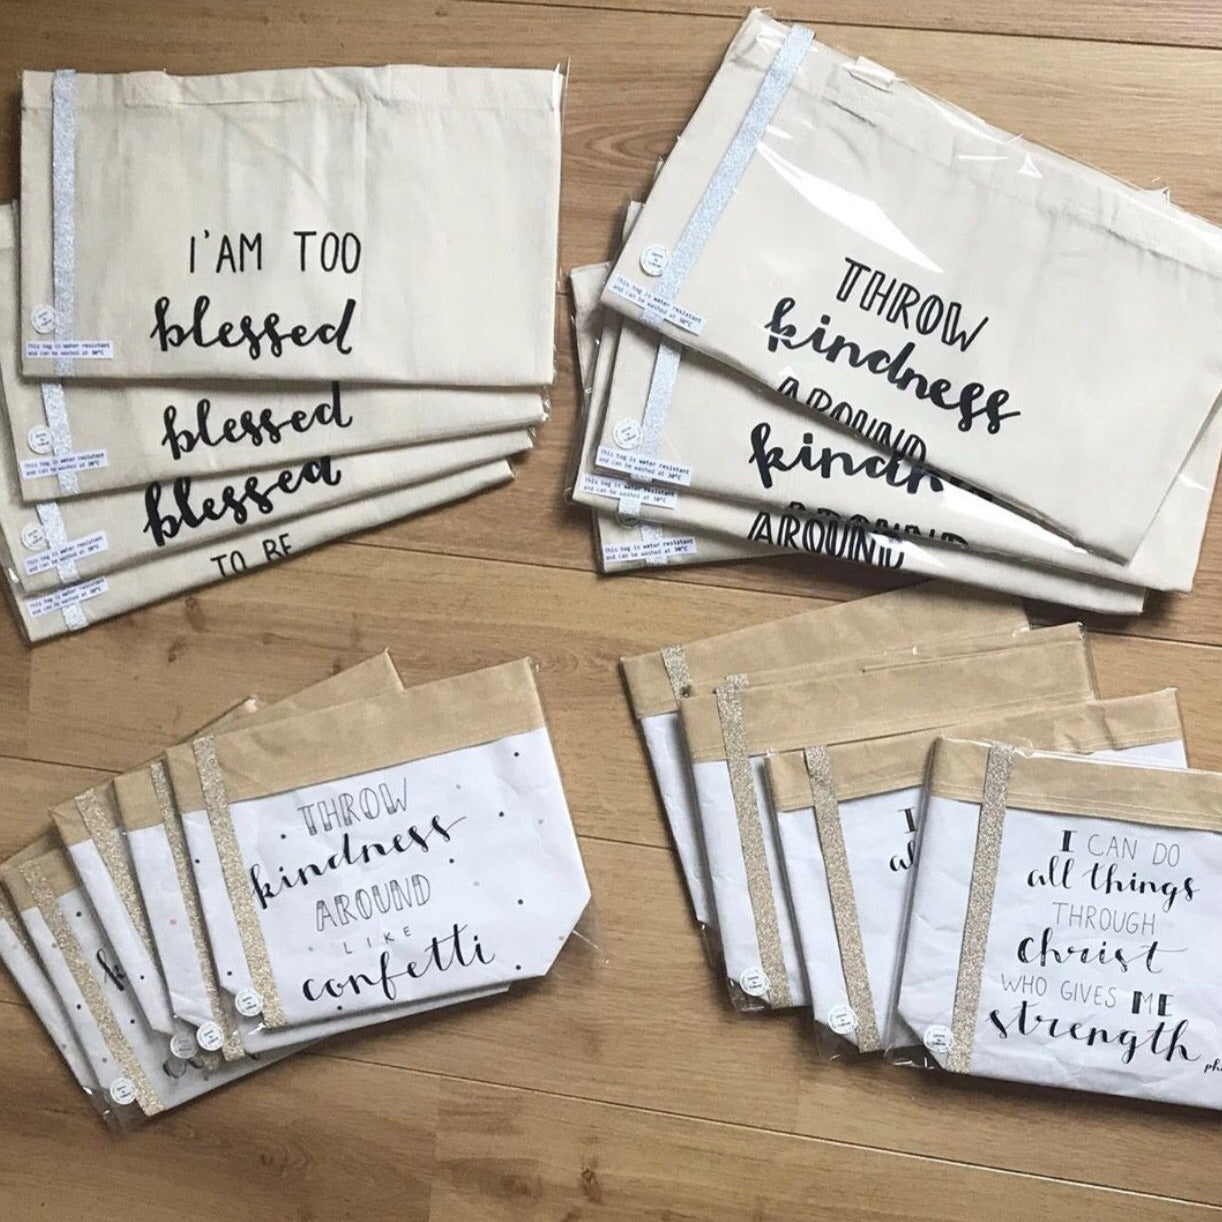 Paper show bag - Throw kindness around......